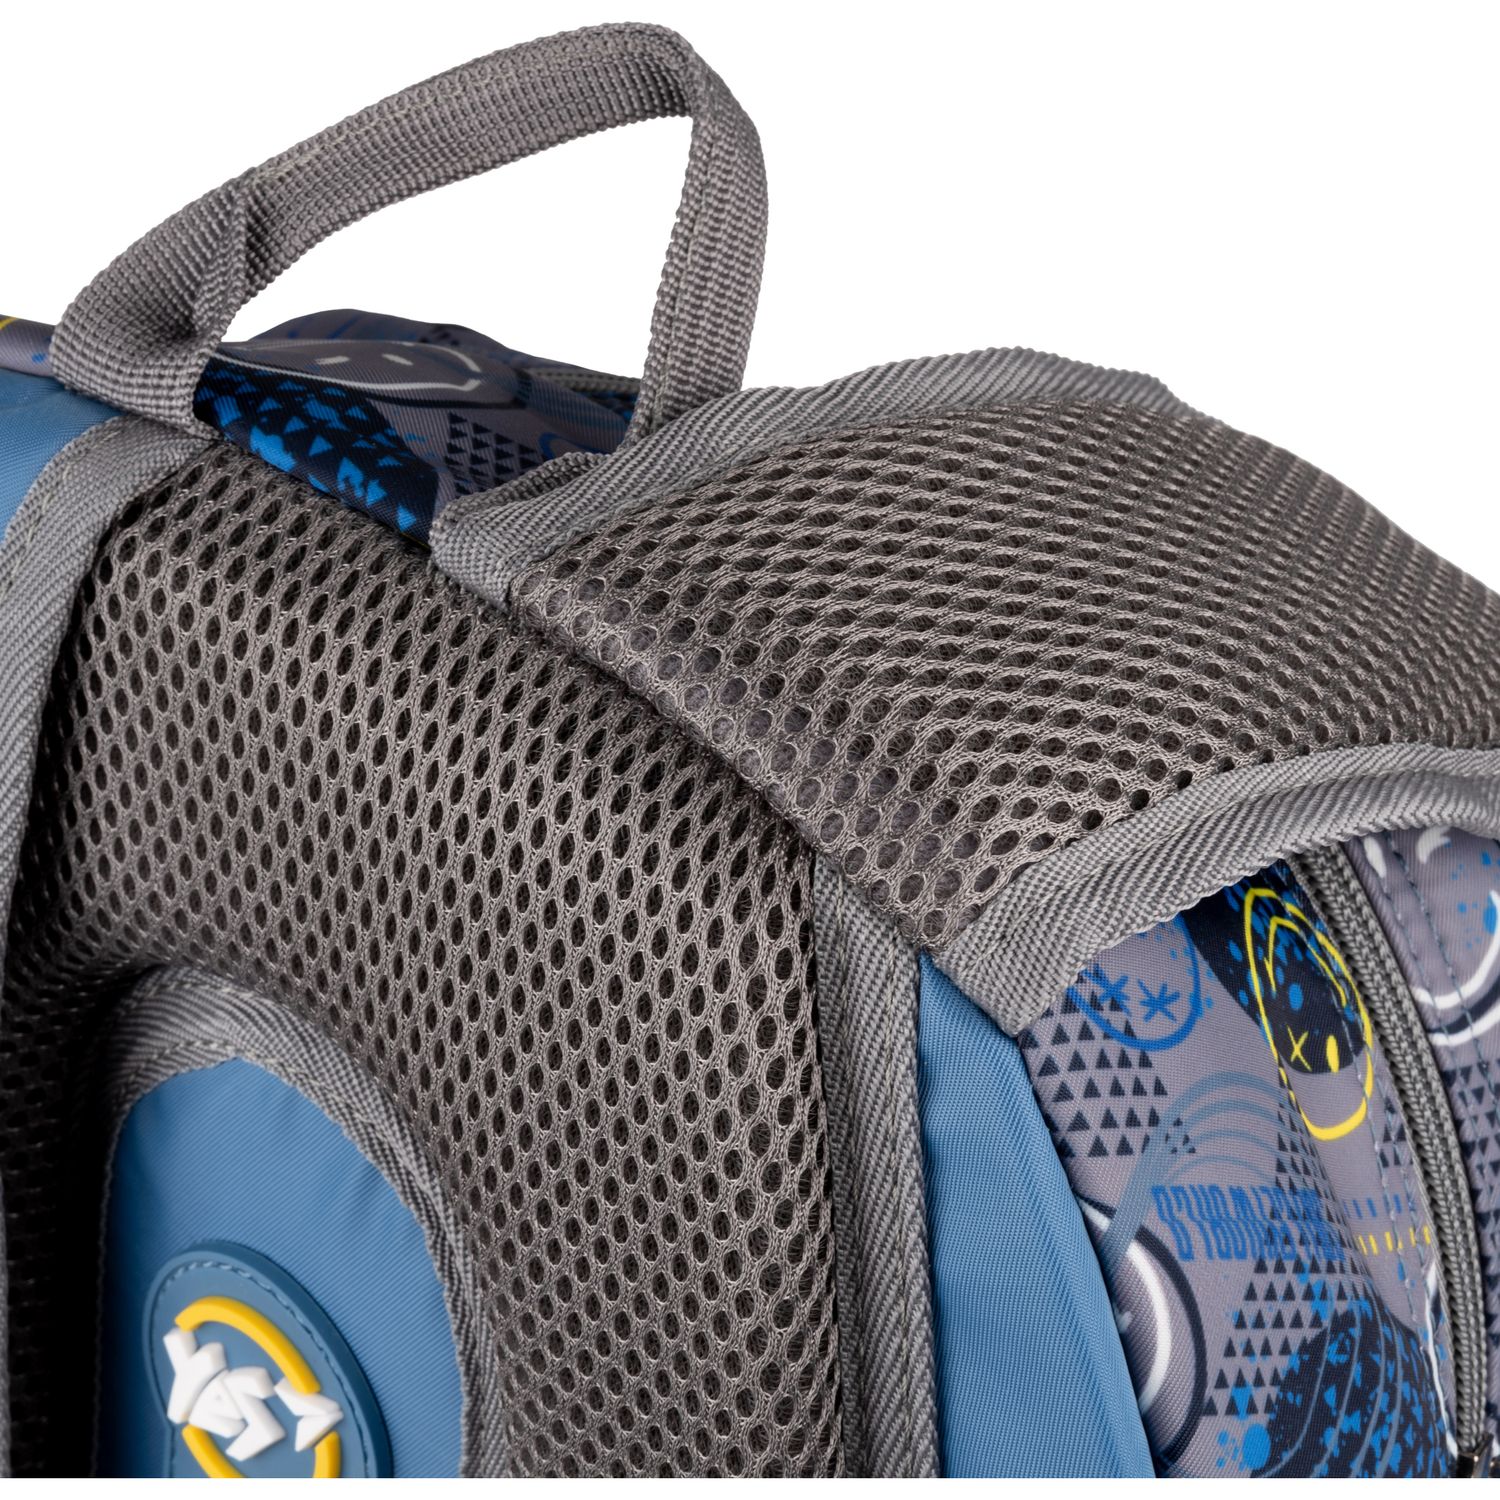 Рюкзак Yes TS-43 Smiley World, серый с голубым (559540) - фото 9